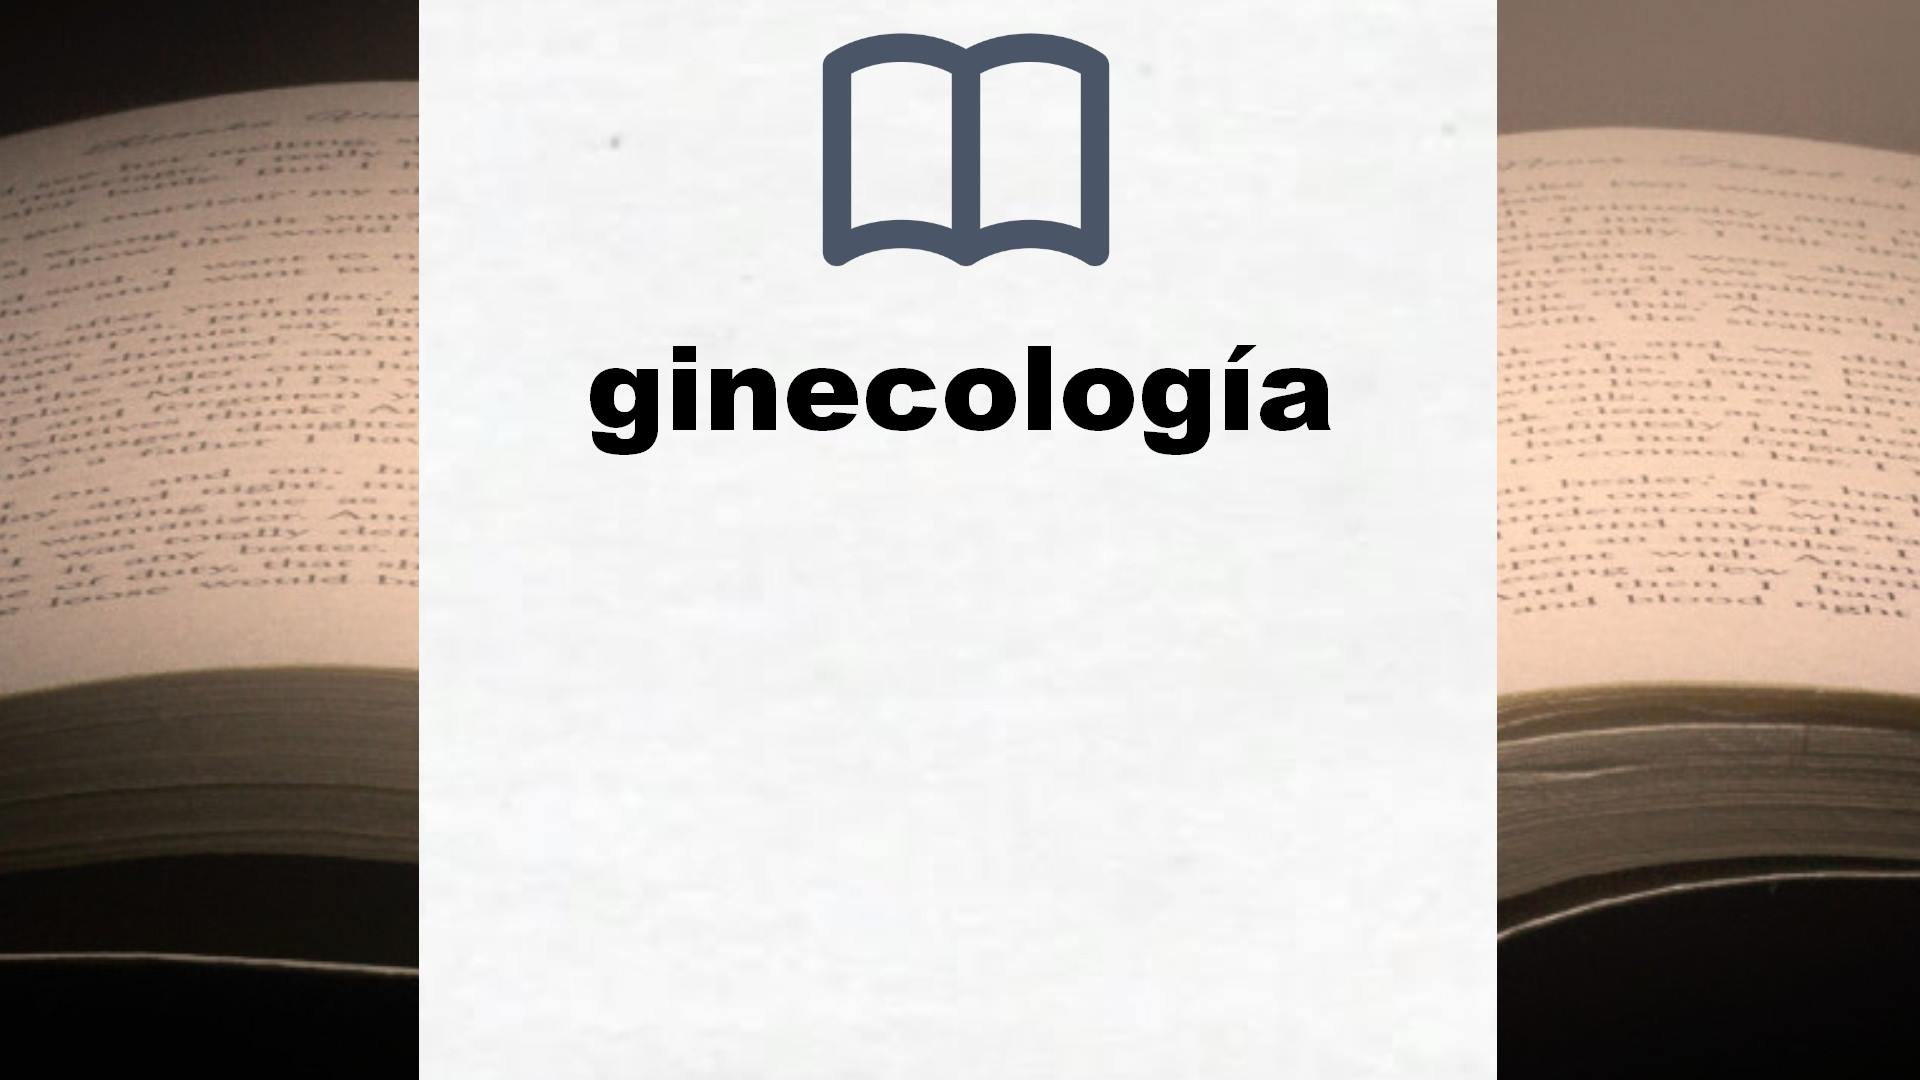 Libros sobre ginecología